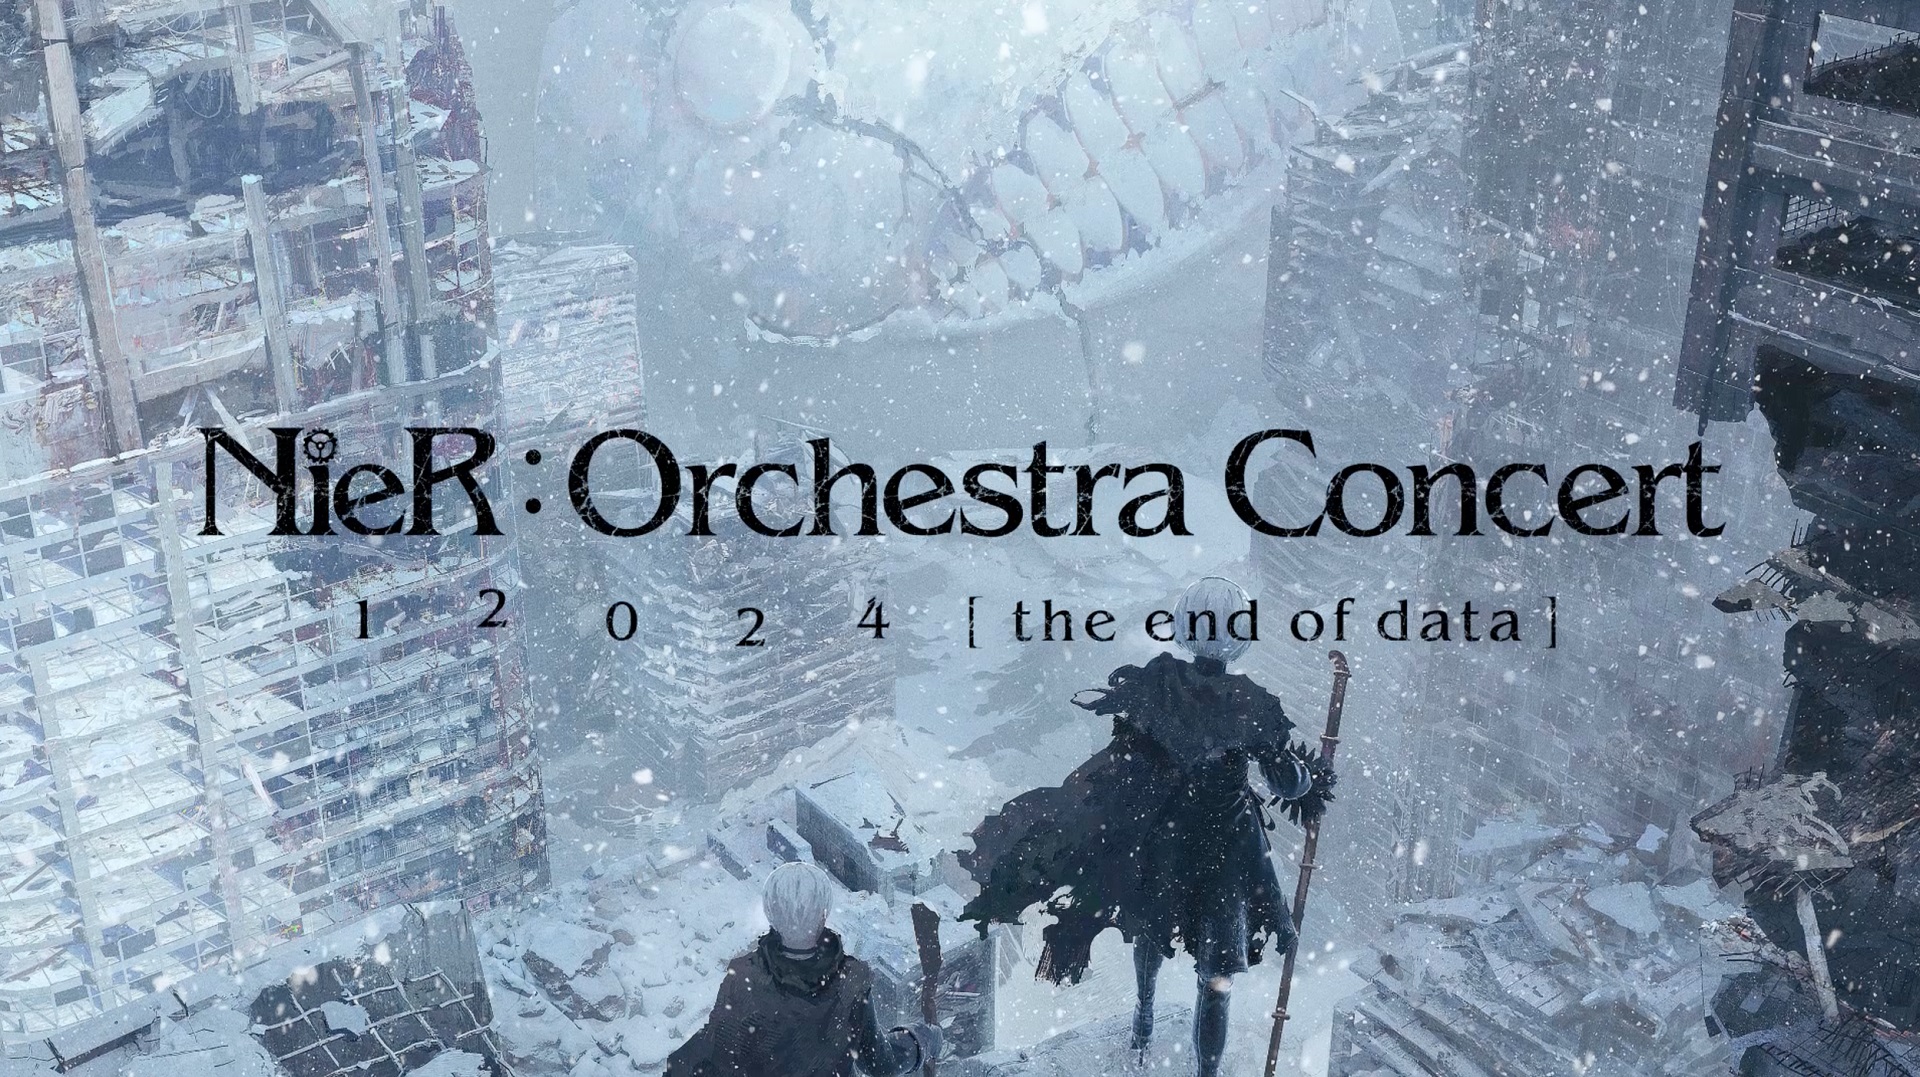 NieR orchestral concert tour